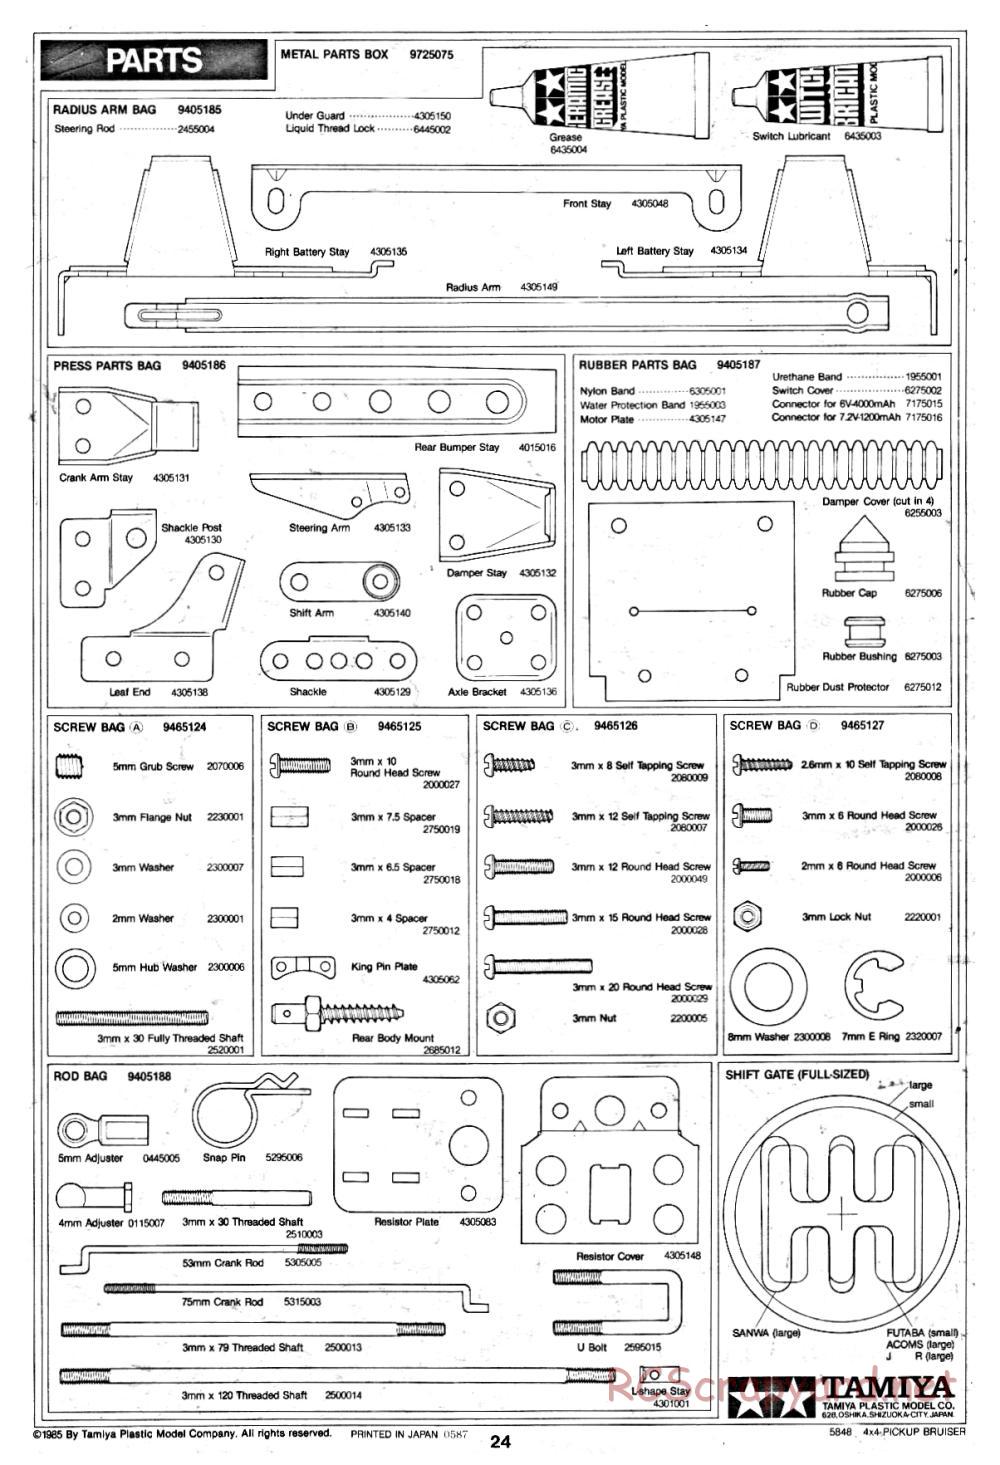 Tamiya - Toyota 4x4 Pick-Up Bruiser - 58048 - Manual - Page 24